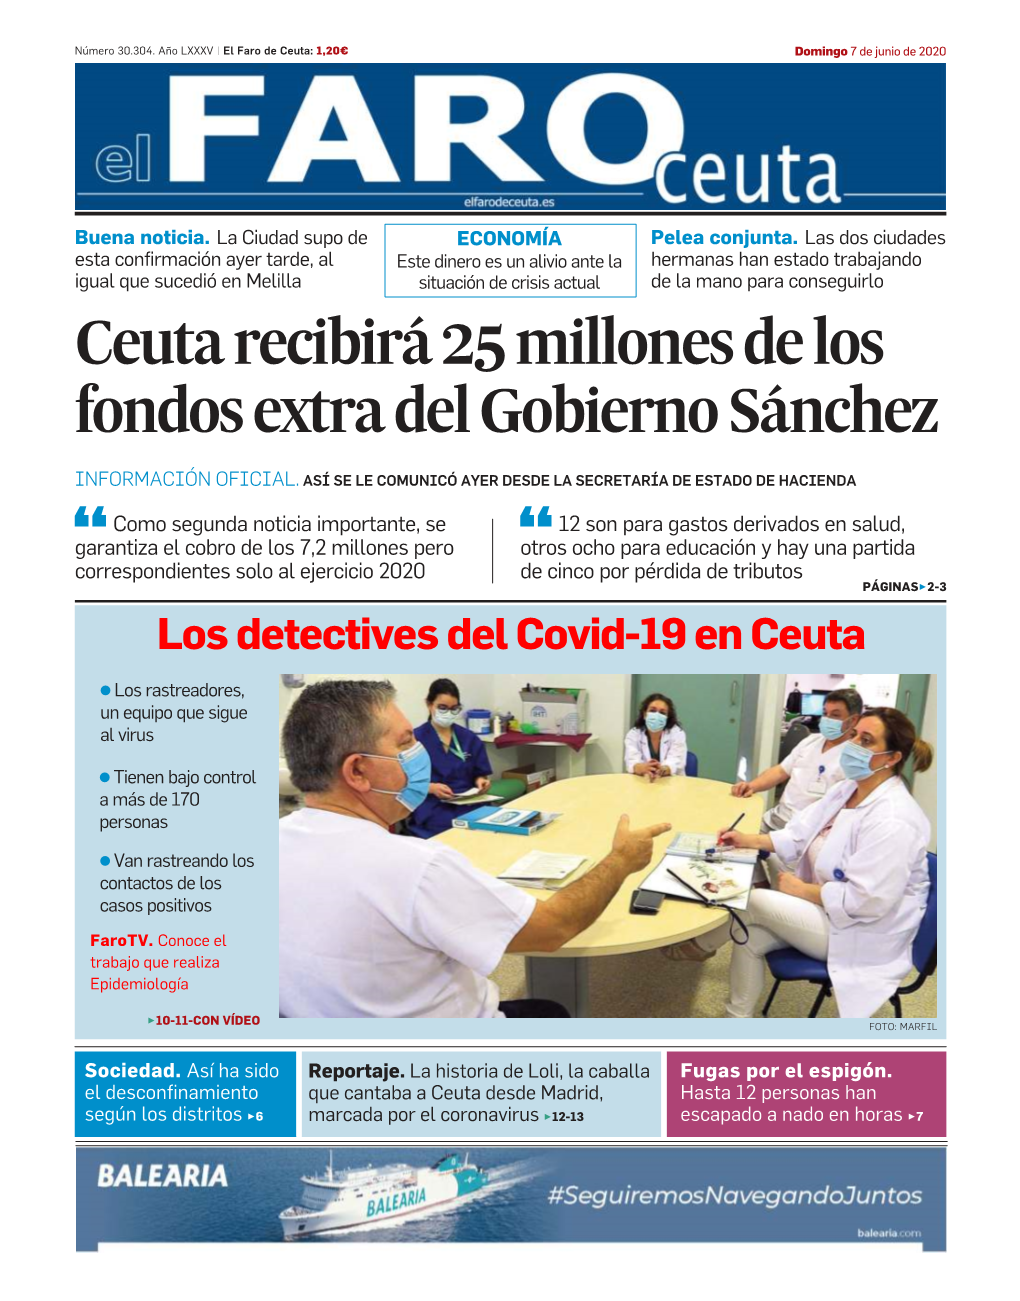 Ceuta Recibirá 25 Millones De Los Fondos Extra Del Gobierno Sánchez